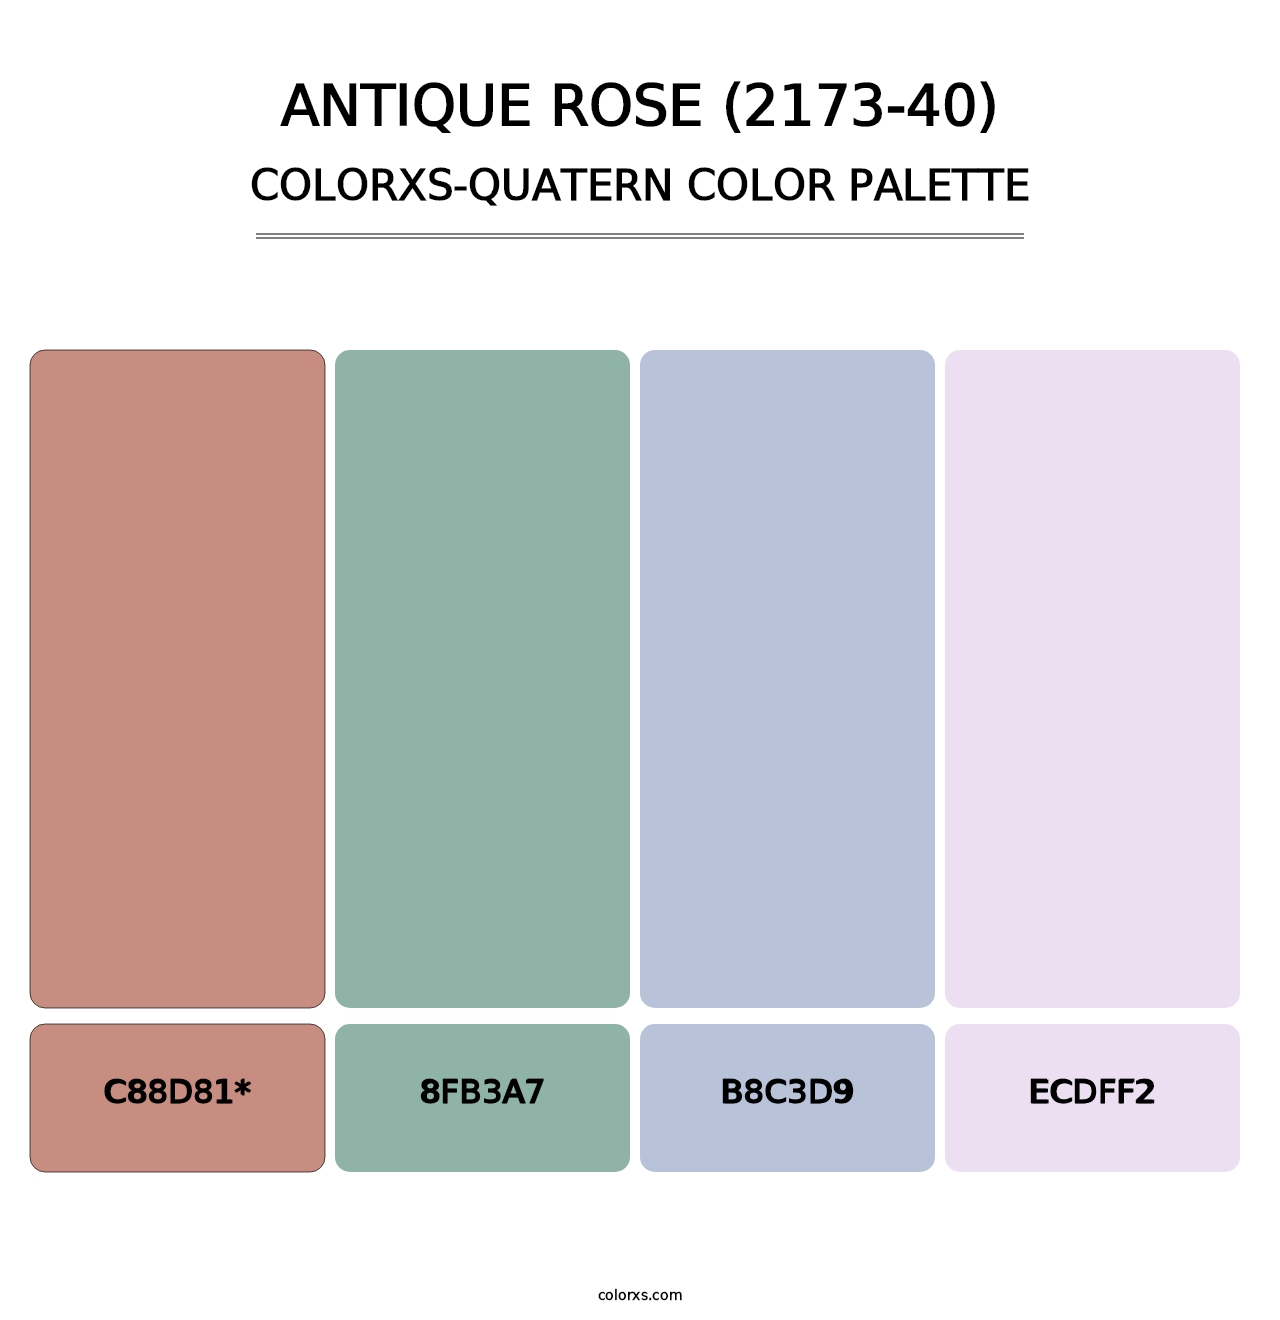 Antique Rose (2173-40) - Colorxs Quatern Palette